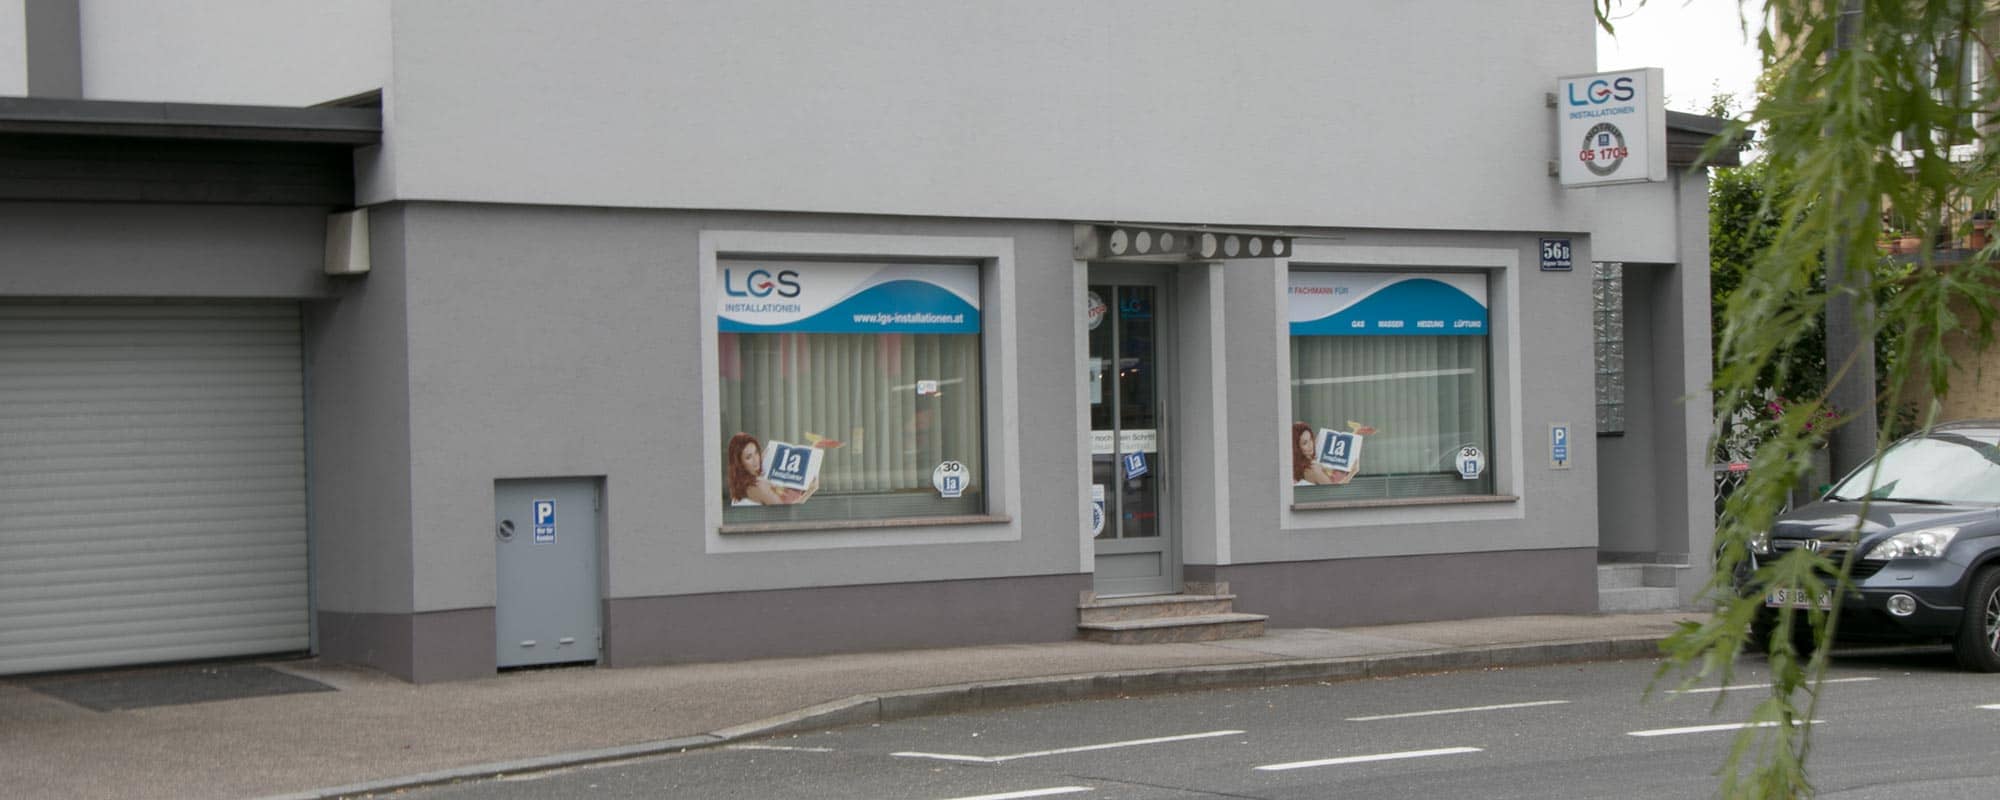 LGS Installationen Salzburg | Sanitär - Wasser - Heizung - Gas - Alternativenergie